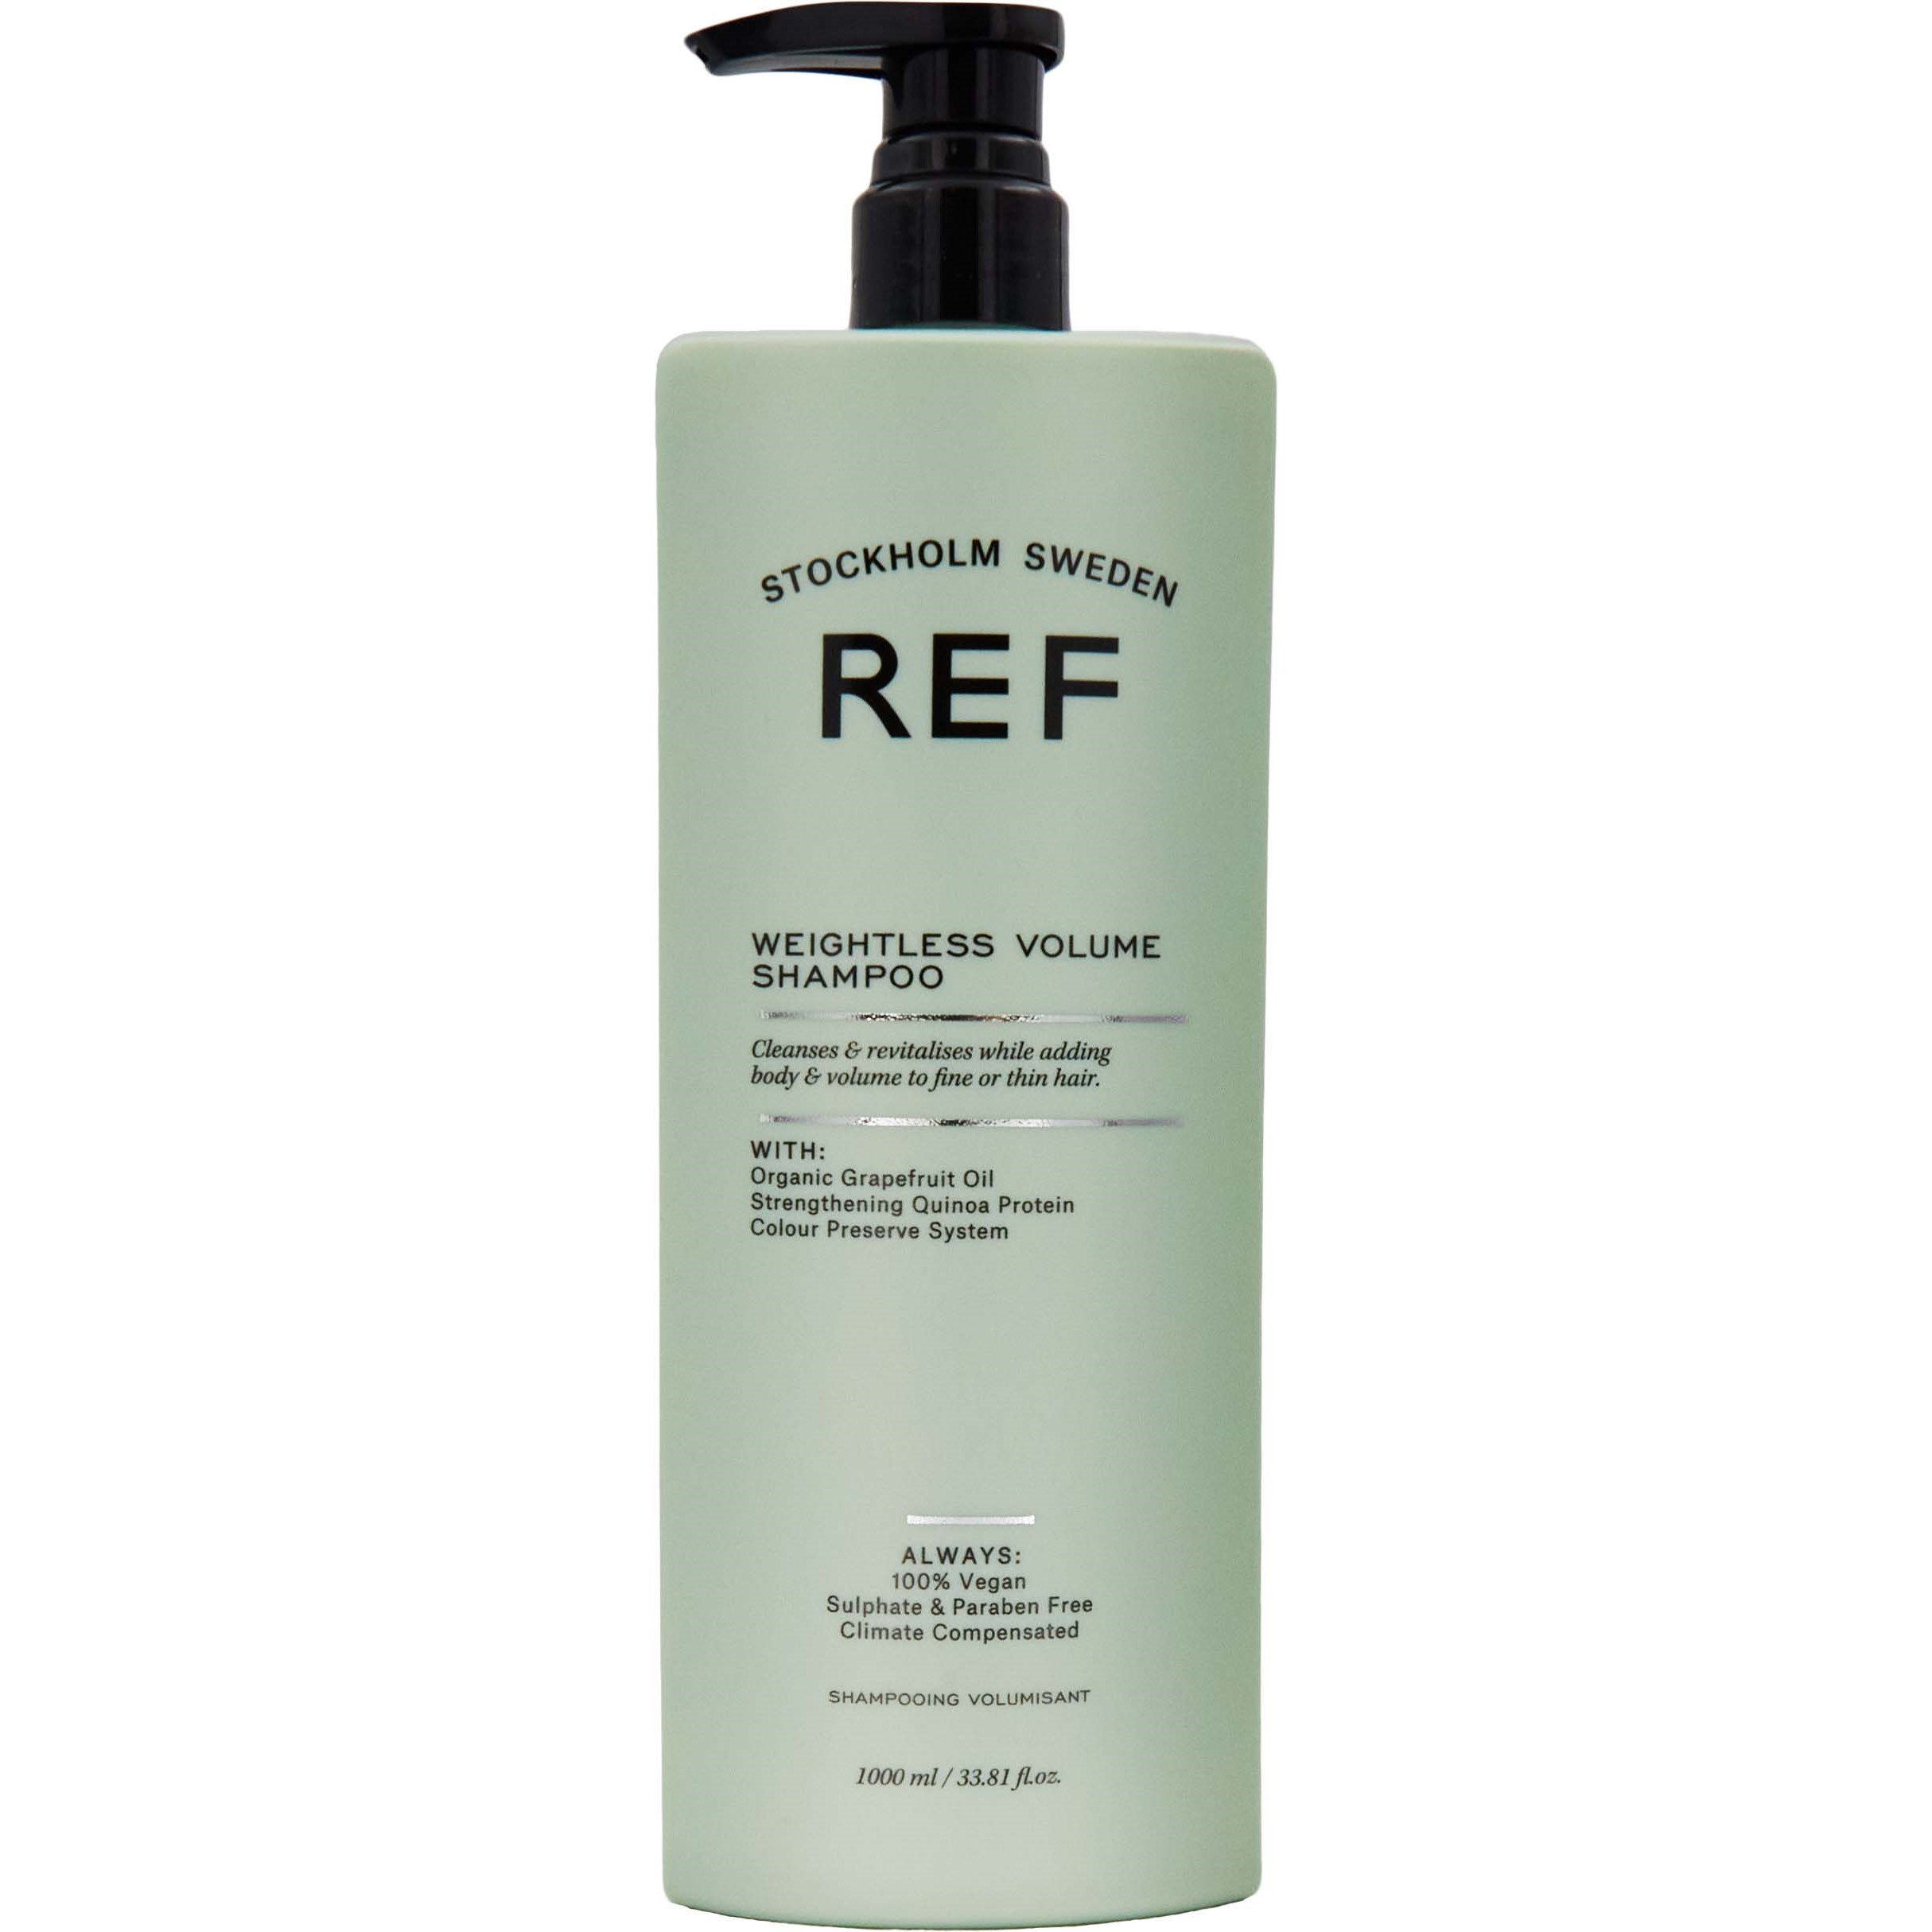 Läs mer om REF. Weightless Volume Weightless Volume Shampoo 1000 ml